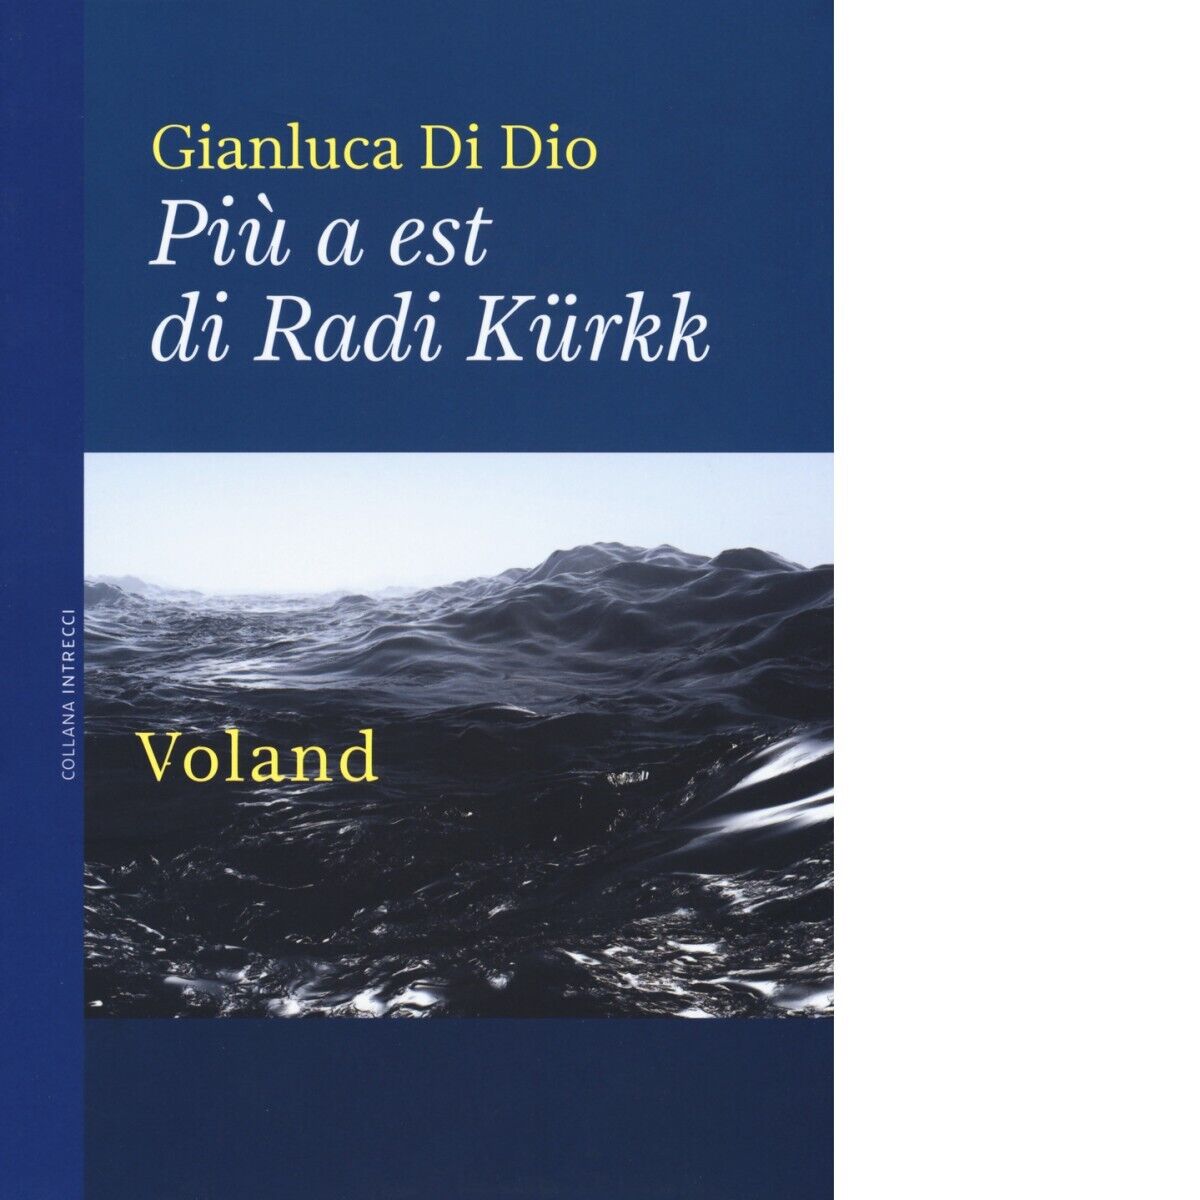 Pi? a est di Radi K?rkk di Gianluca Di Dio, 2019, Voland